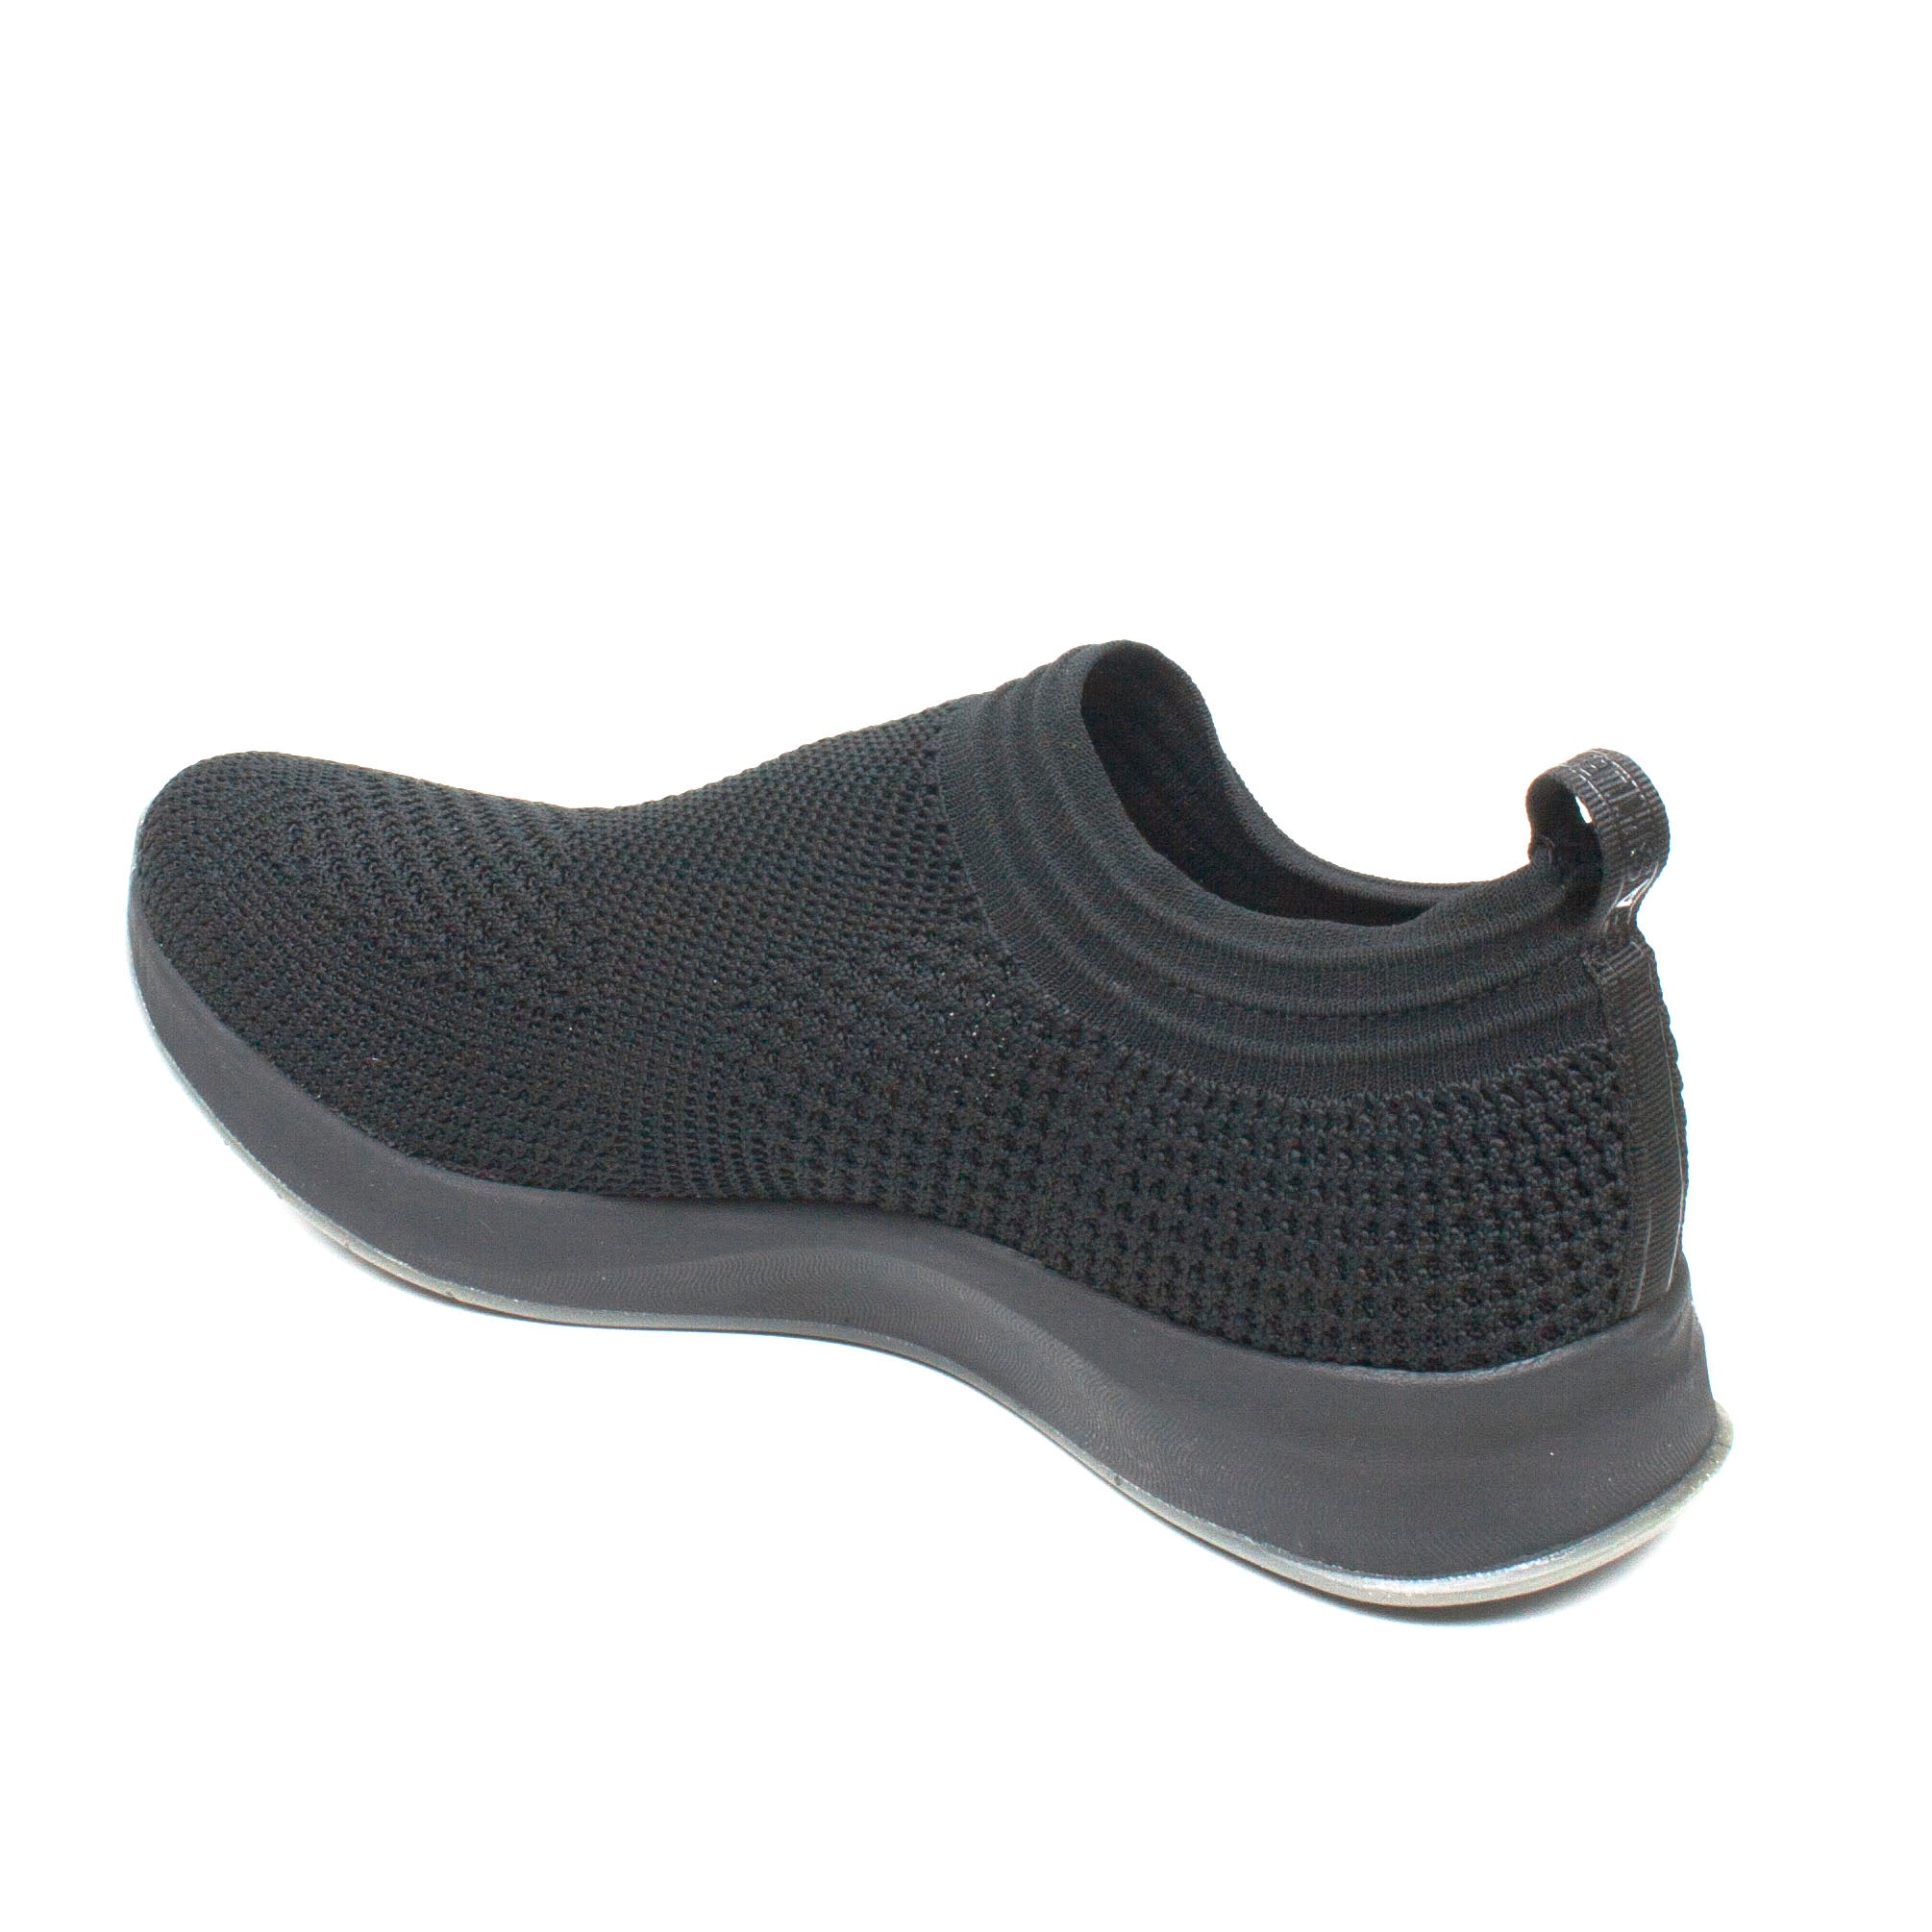 Tamaris pantofi dama sport Fashletics negru ID1868-NG